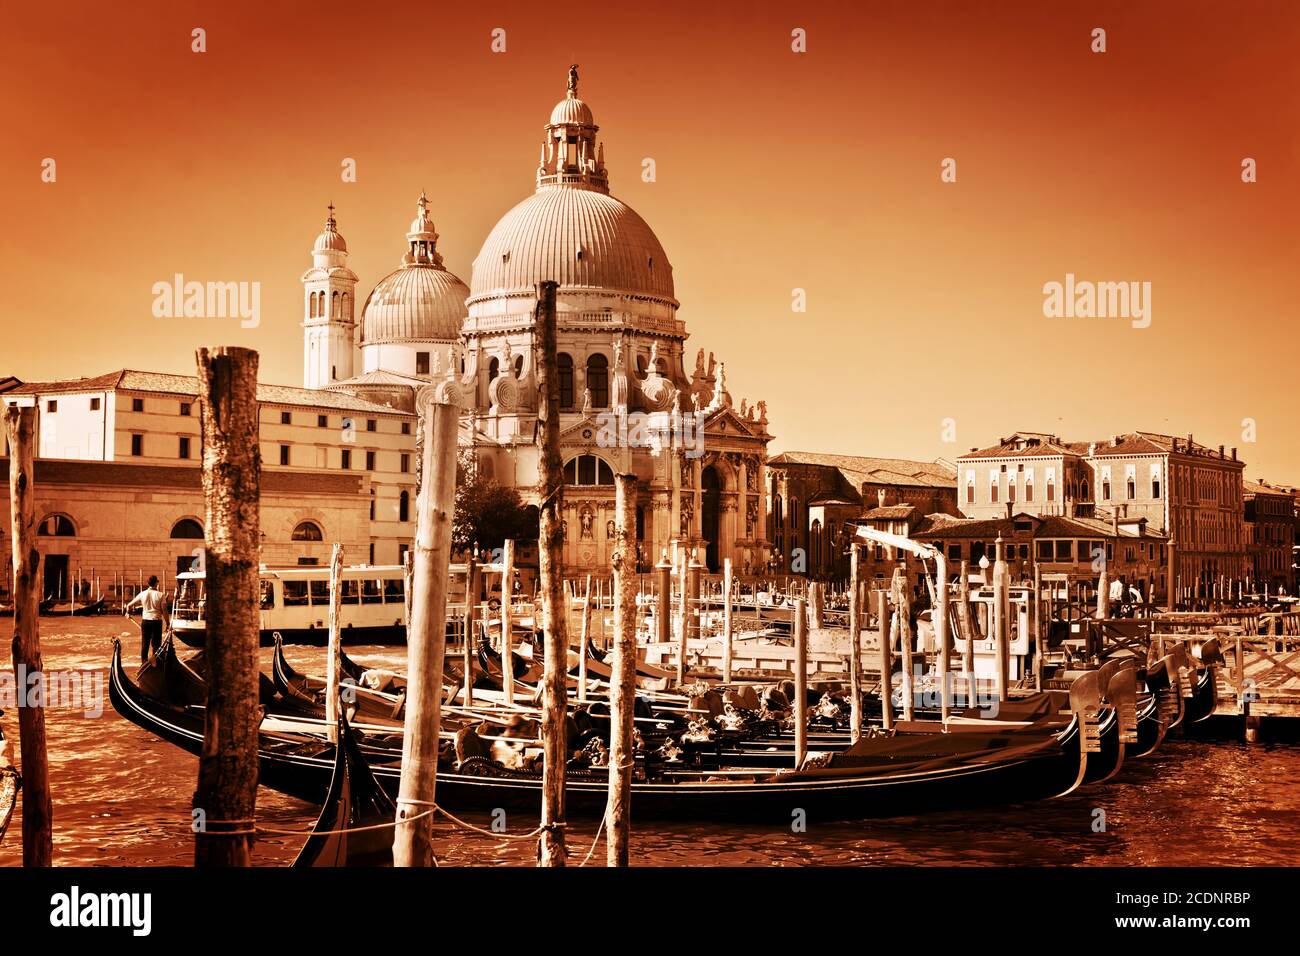 Venice, Italy. Basilica Santa Maria della Salute and Grand Canal Stock Photo